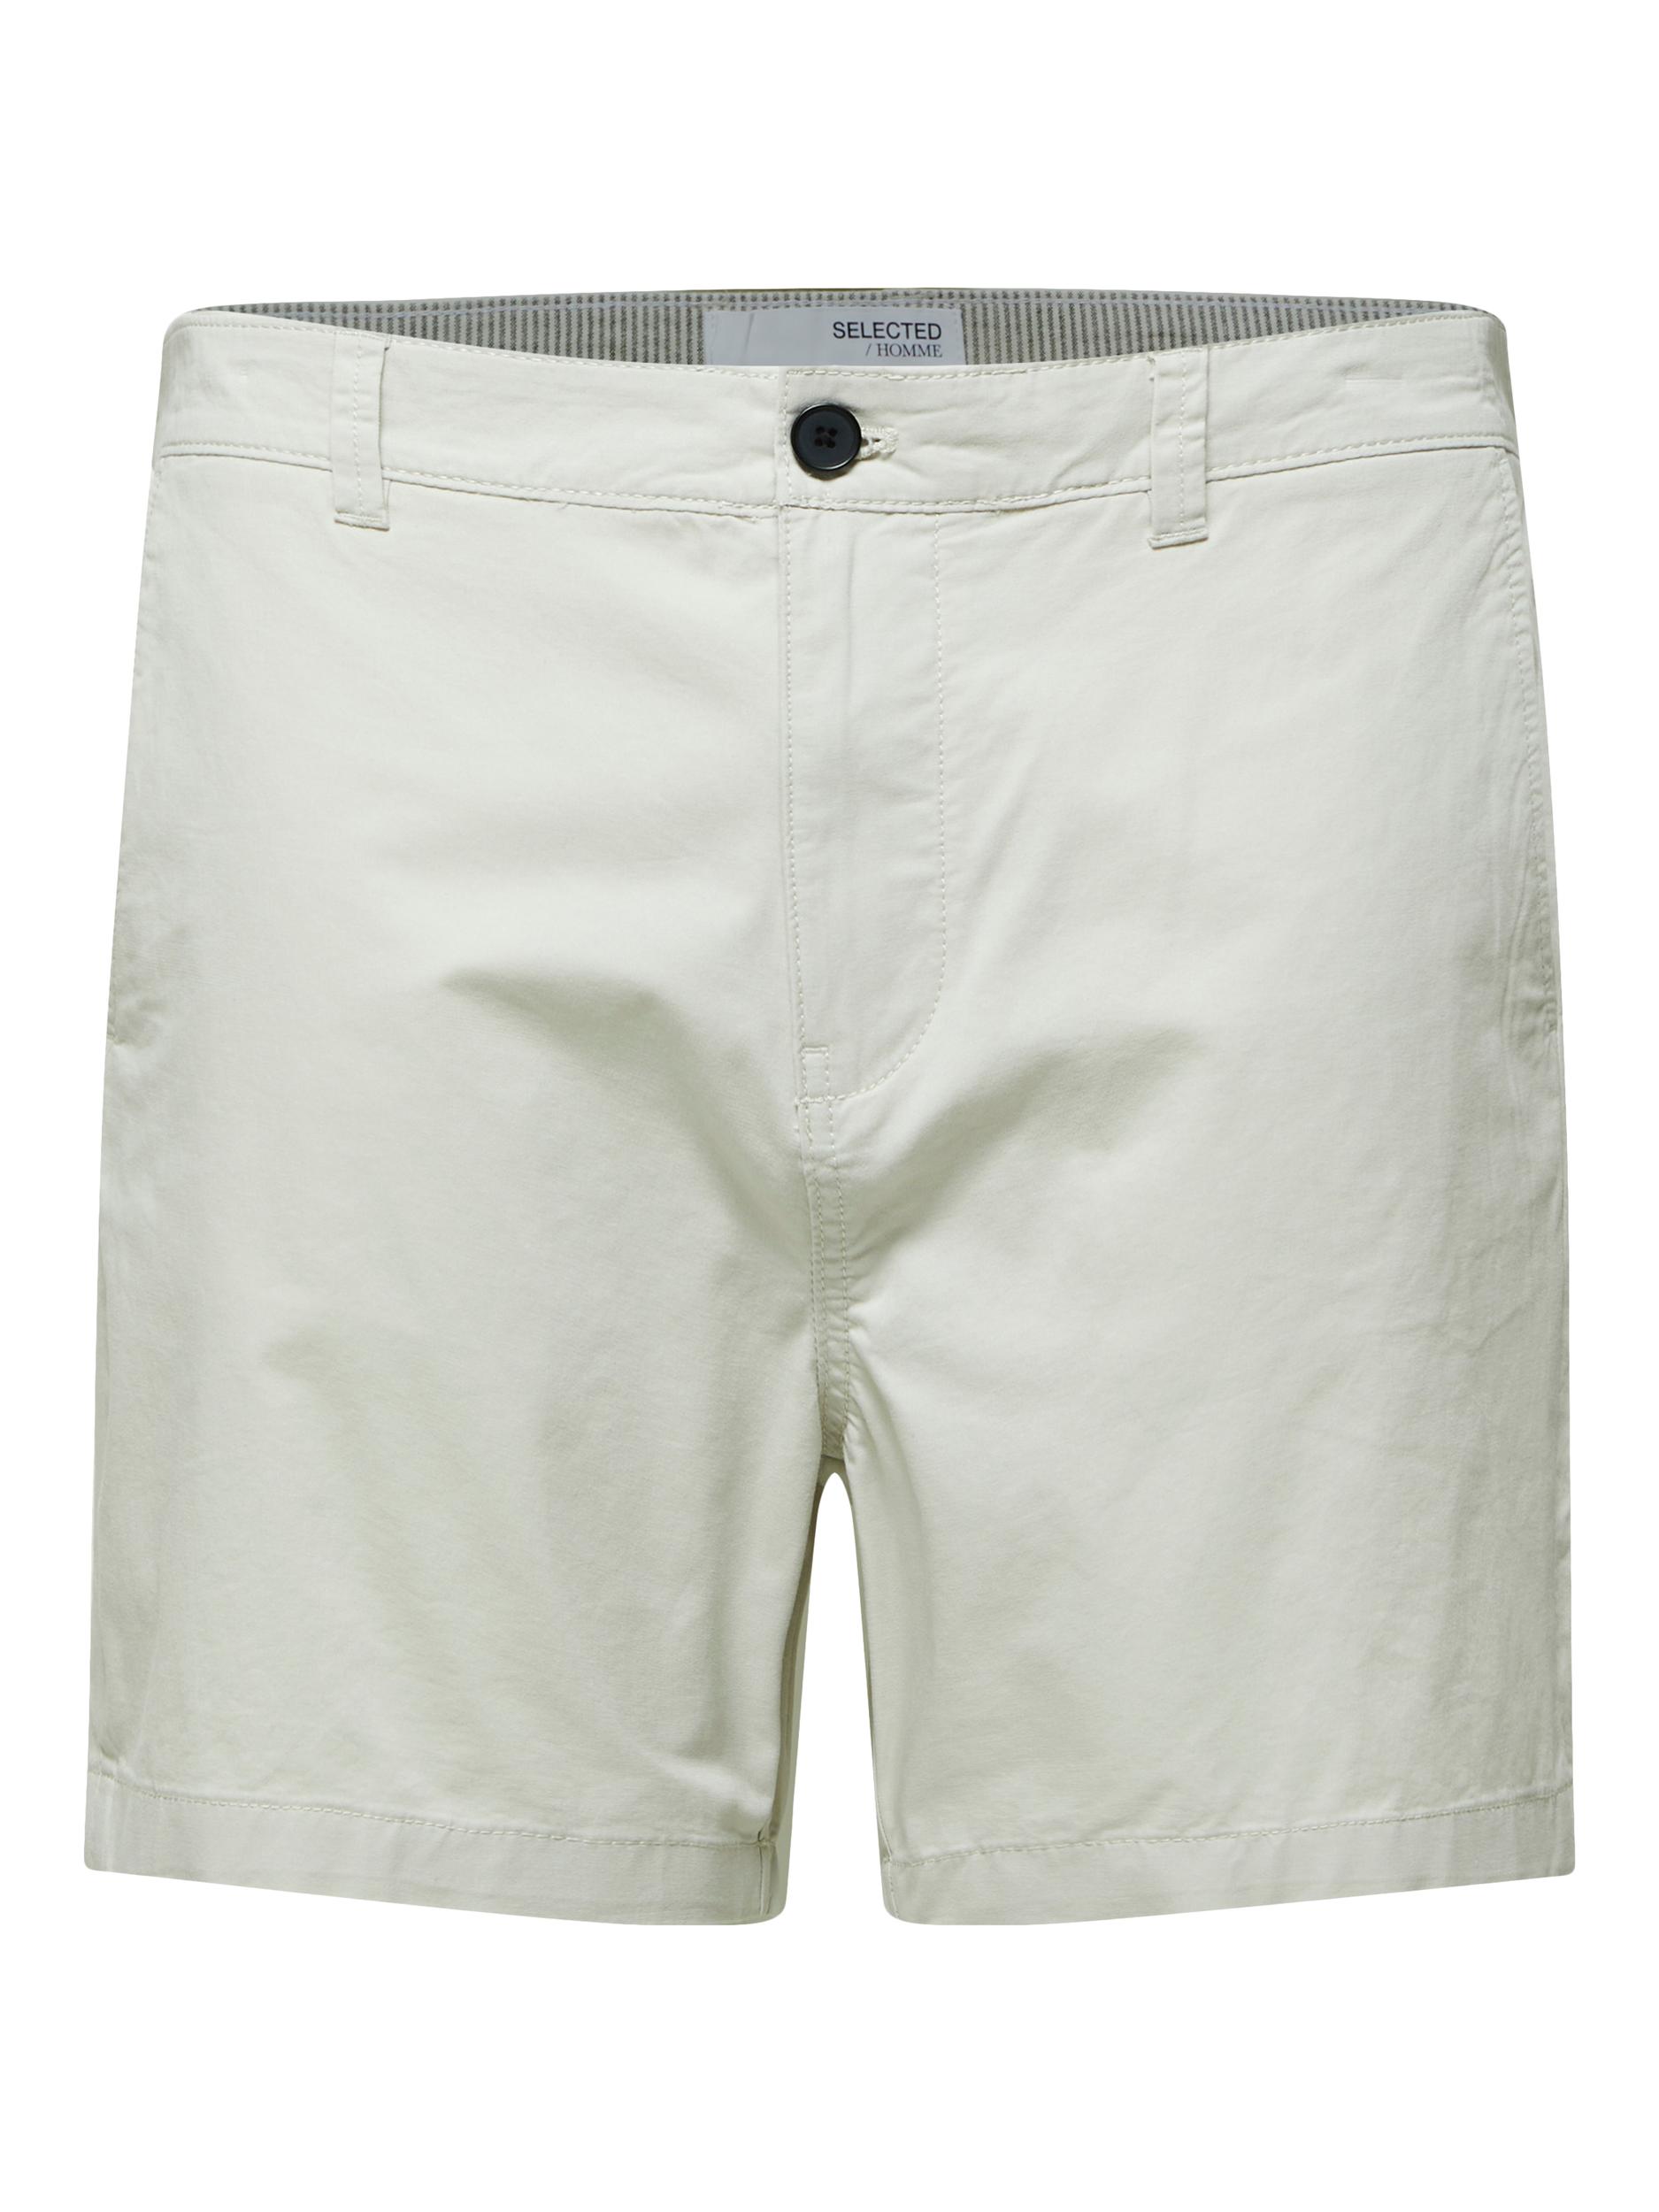  Comfort Flex Shorts, Moonstruck, L